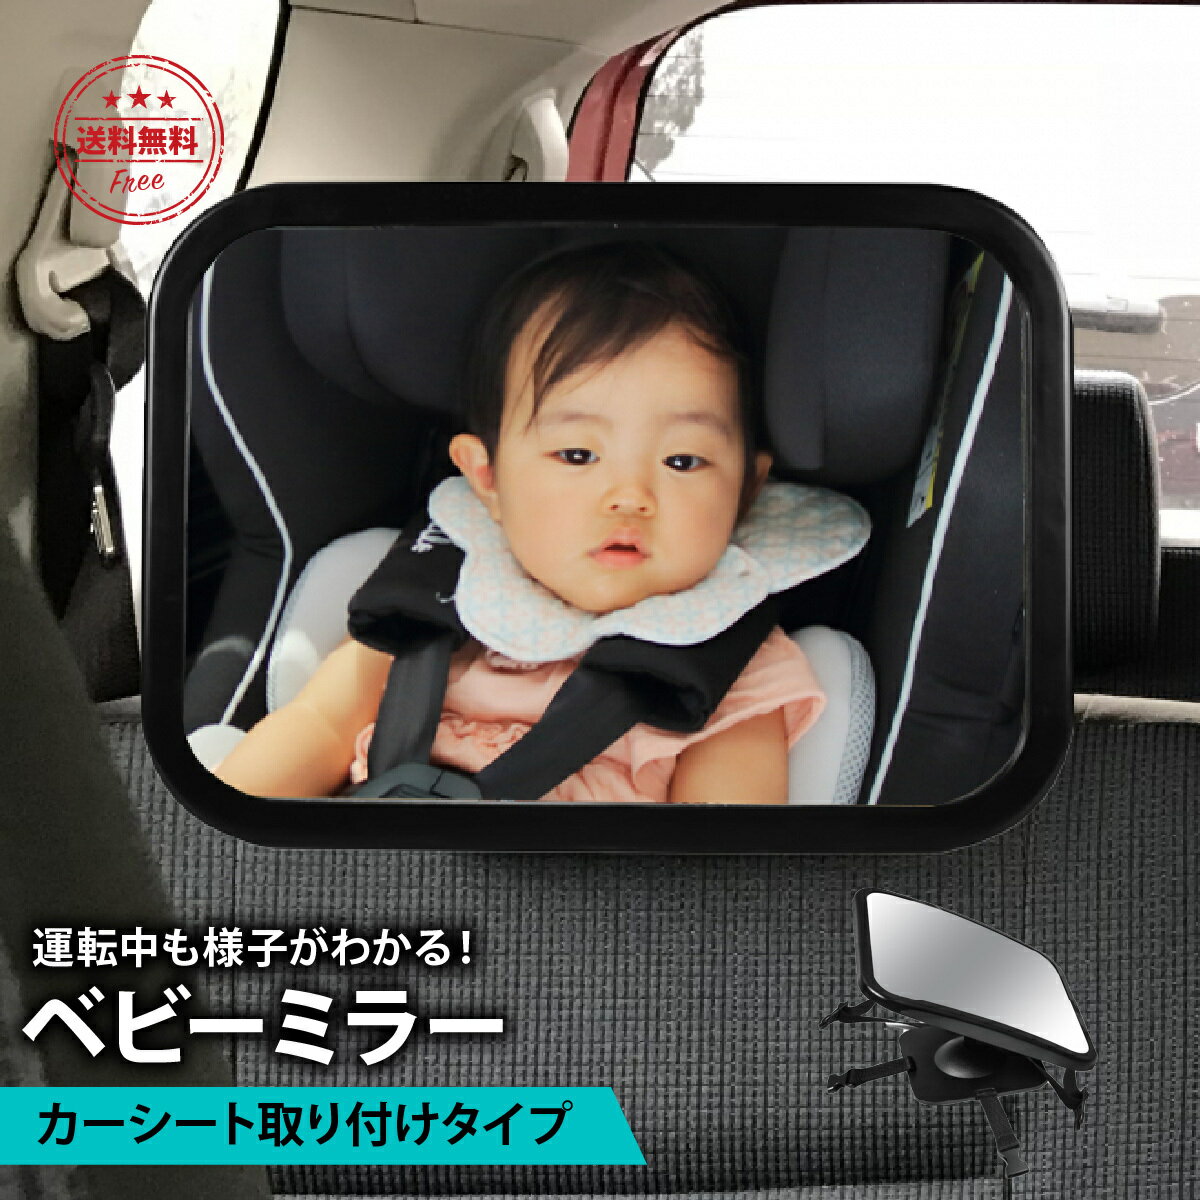 ベビーミラー 車 赤ちゃん インサイトミラー ベビー ミラー 車載 鏡 後部座席 360度回転 ヘッドレスト 角度調整 後ろ向き 安心 子供 見守り 取り付け 簡単 父の日 プレゼント